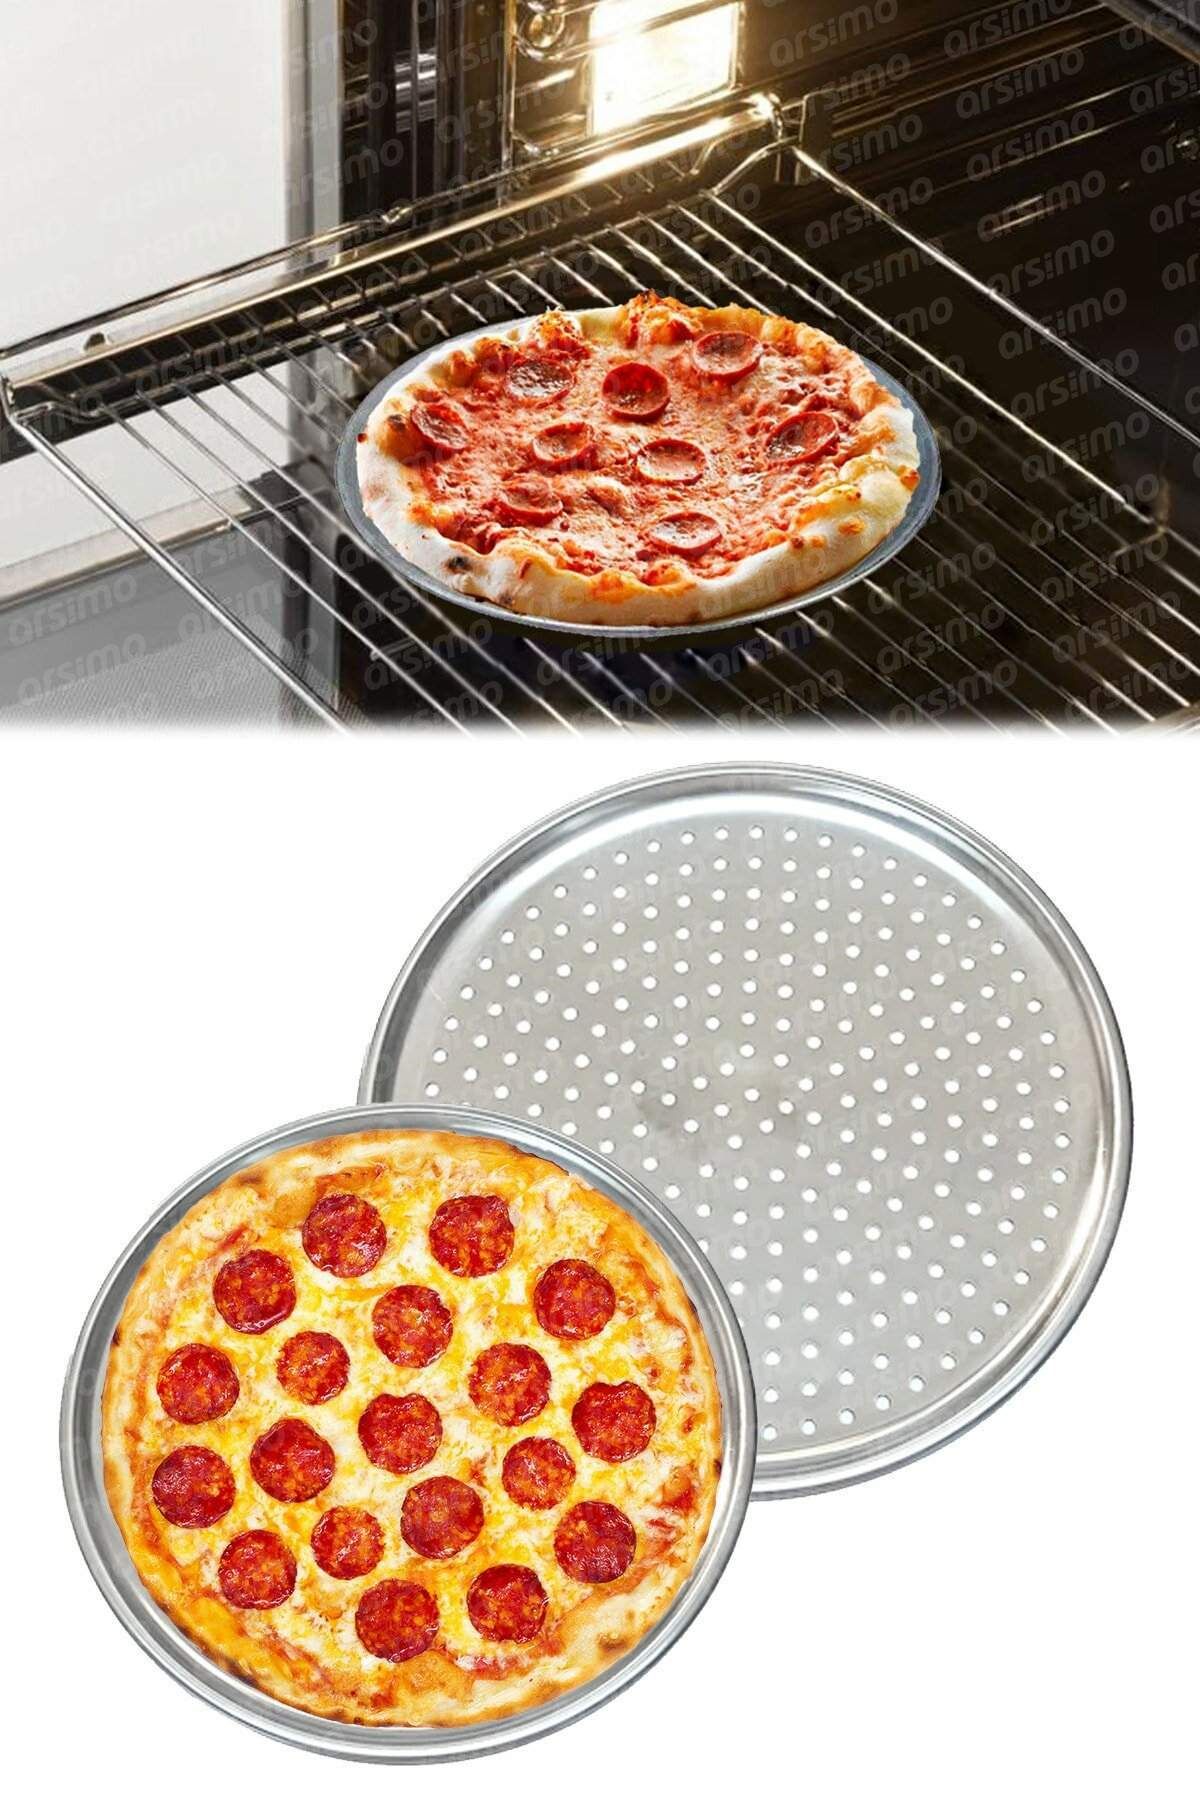 Arsimo Delikli Paslanmaz Çelik Pizza Fırın Tepsisi 32 Cm